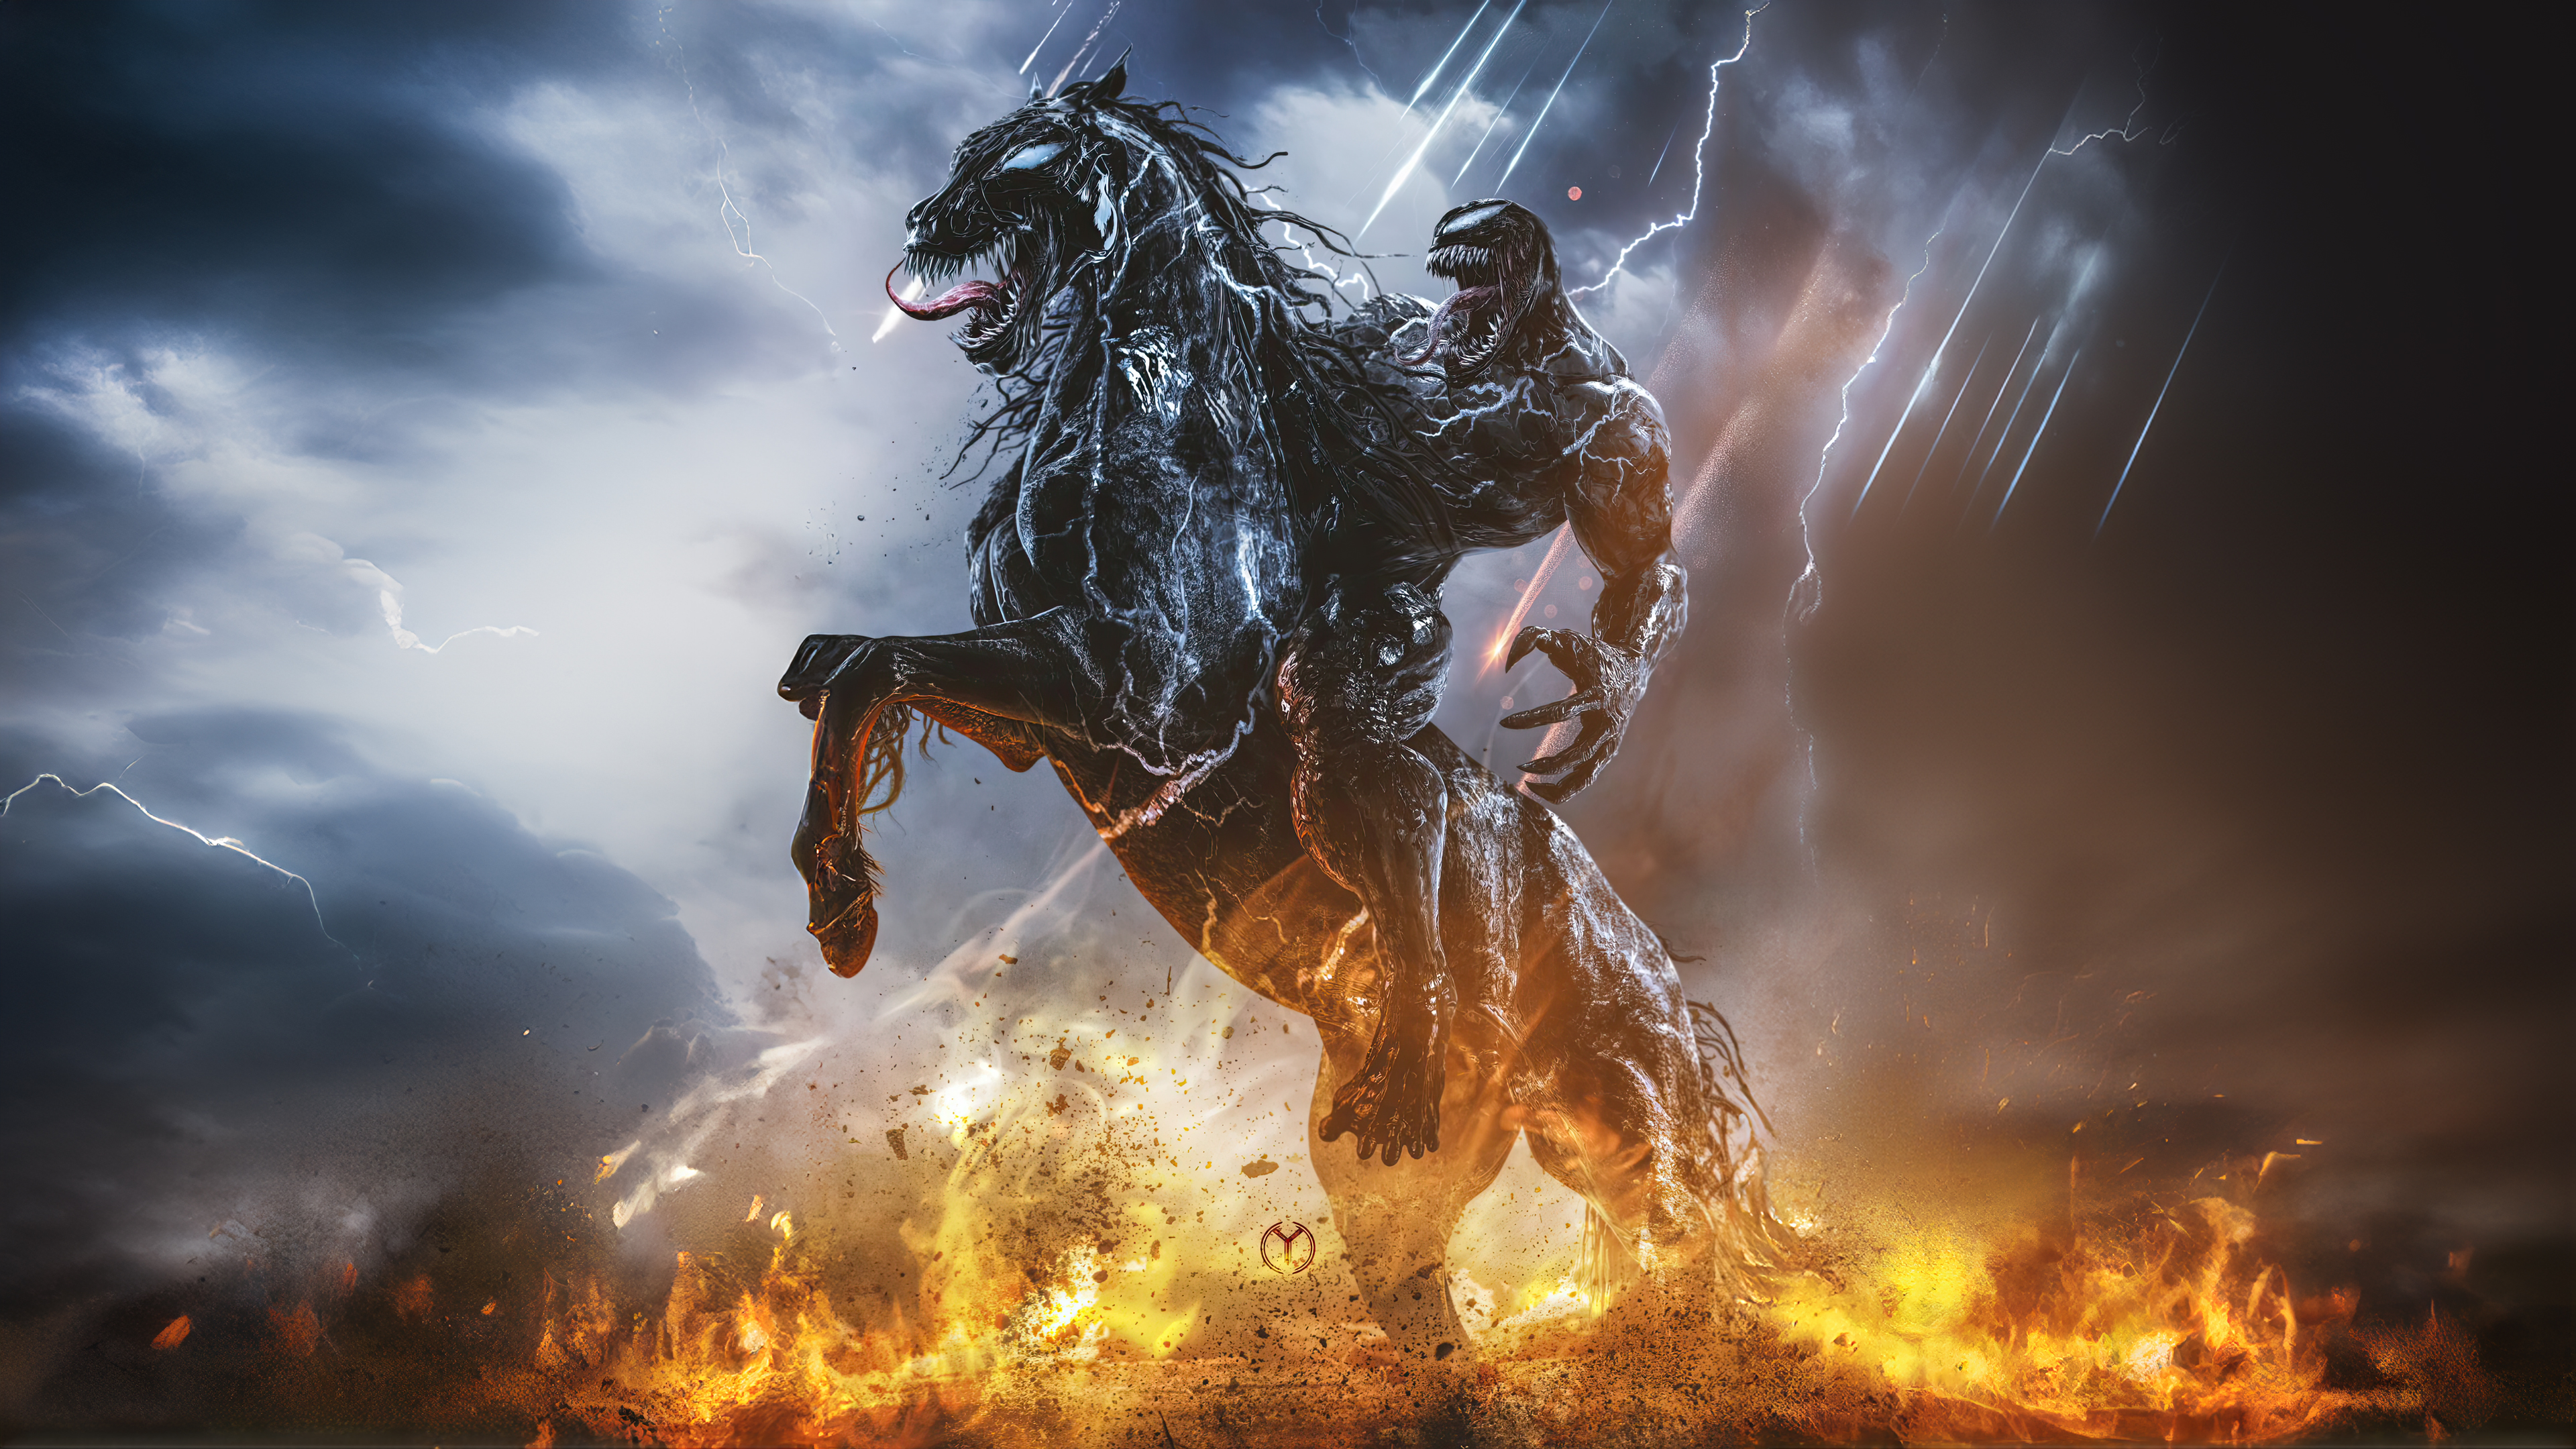 Venom Horse Riding Fire Artwork Digital Art Lightning 3840x2160